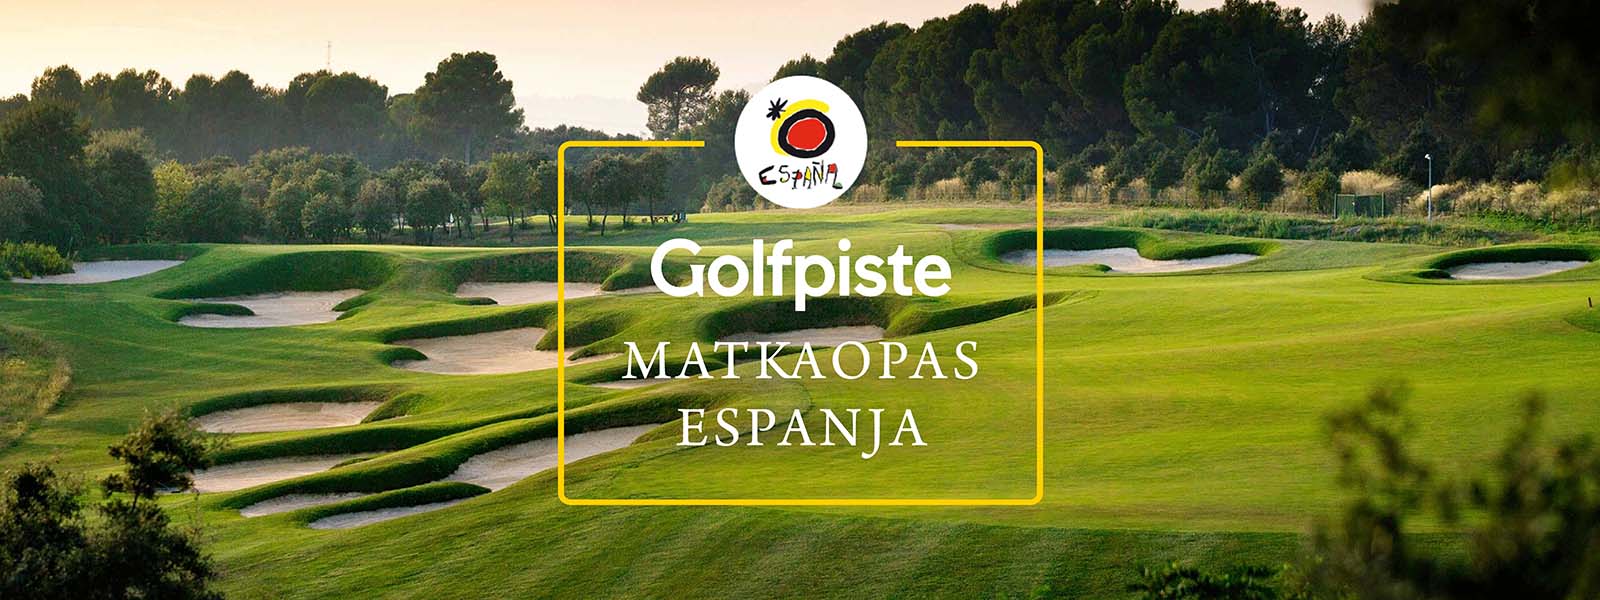 Golfpiste Matkaopas Espanja